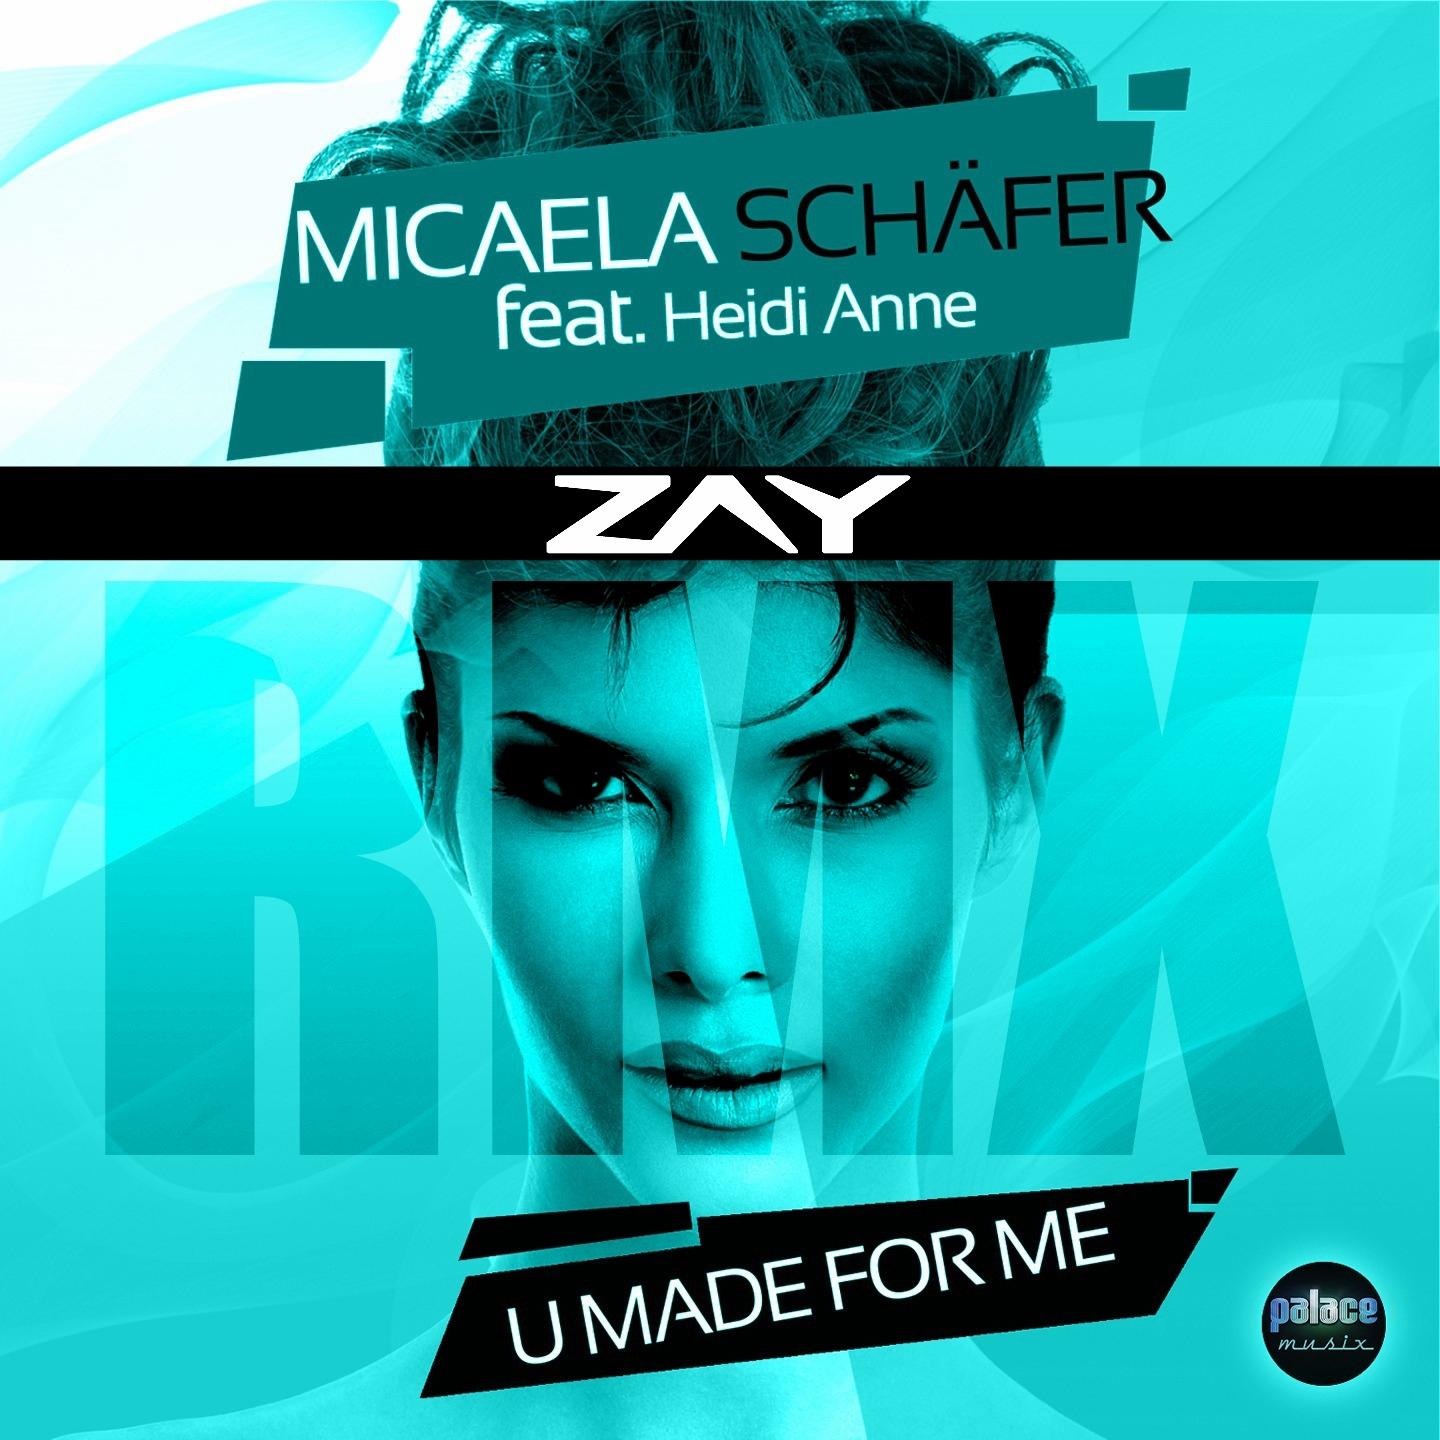 U Made for Me.Micaela Schäfer.(U Made for Me)专 辑.(U Made for Me)专 辑 下 载.(U ...